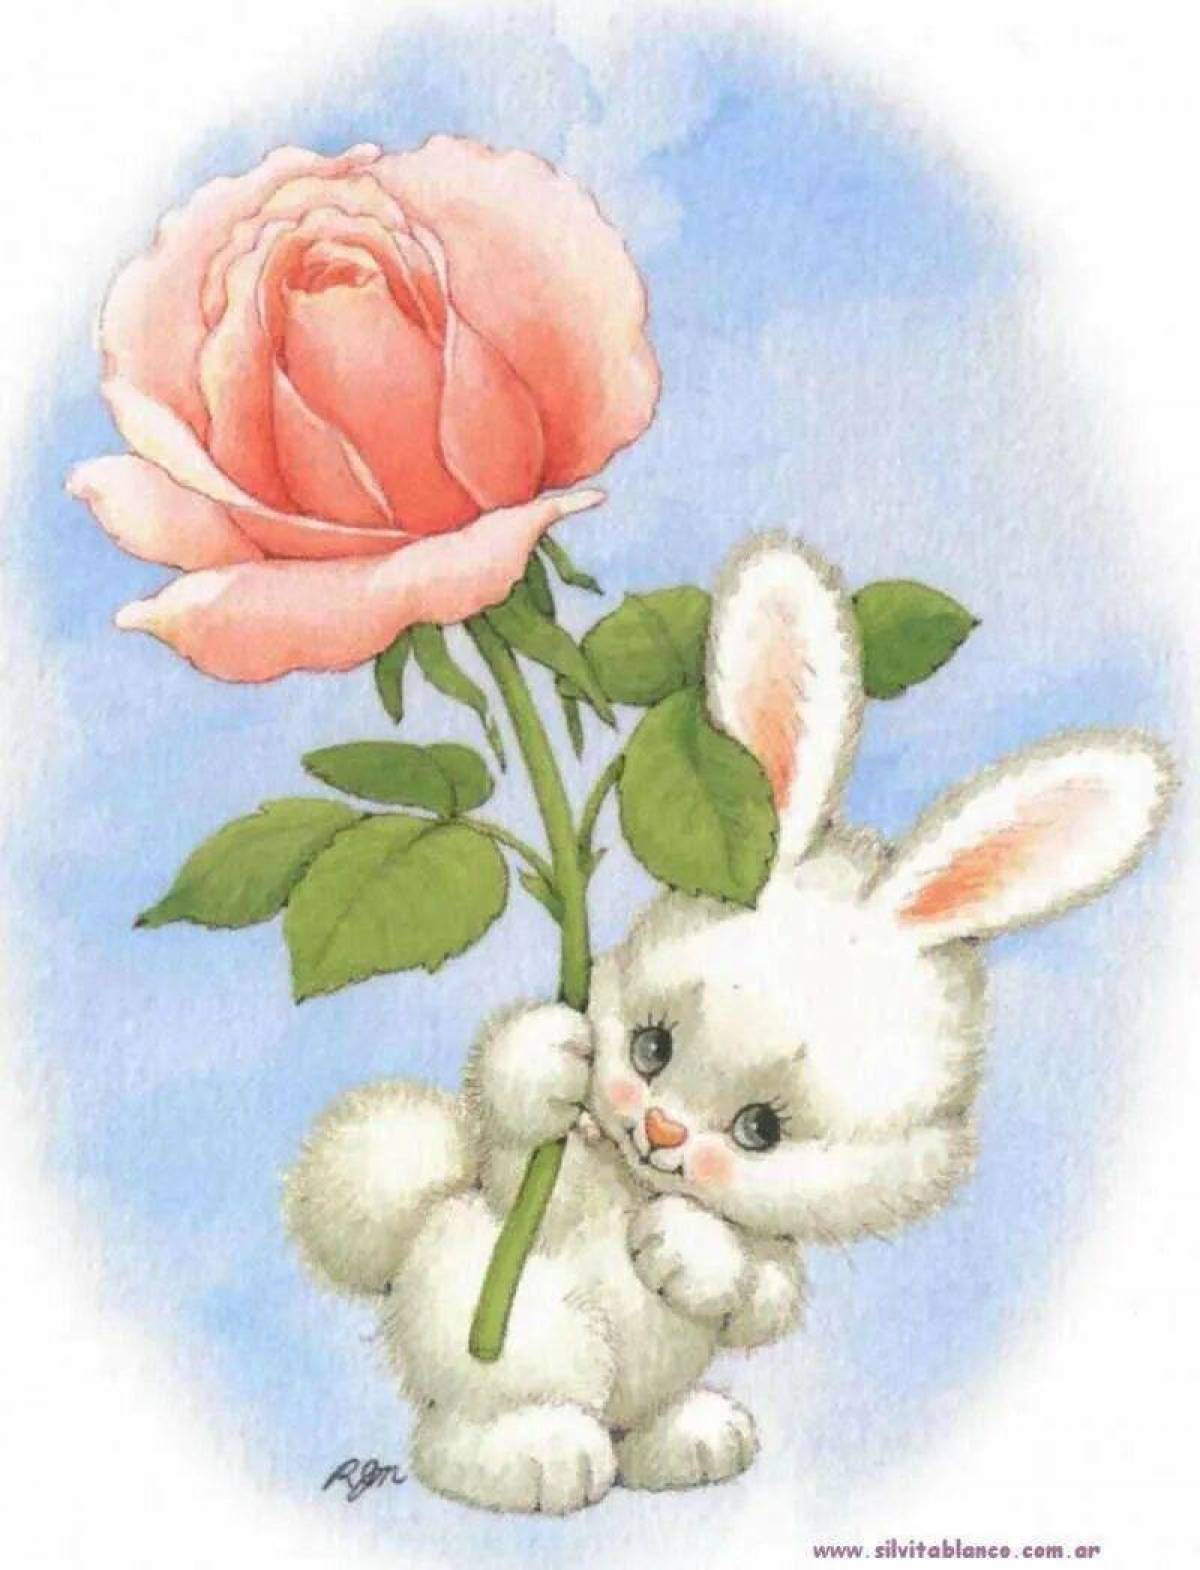 Красивые рисунки для открытки. Зайчик с цветочком. Зверюшки с цветами. Милый зайчик с цветочком. Заяц с розой.